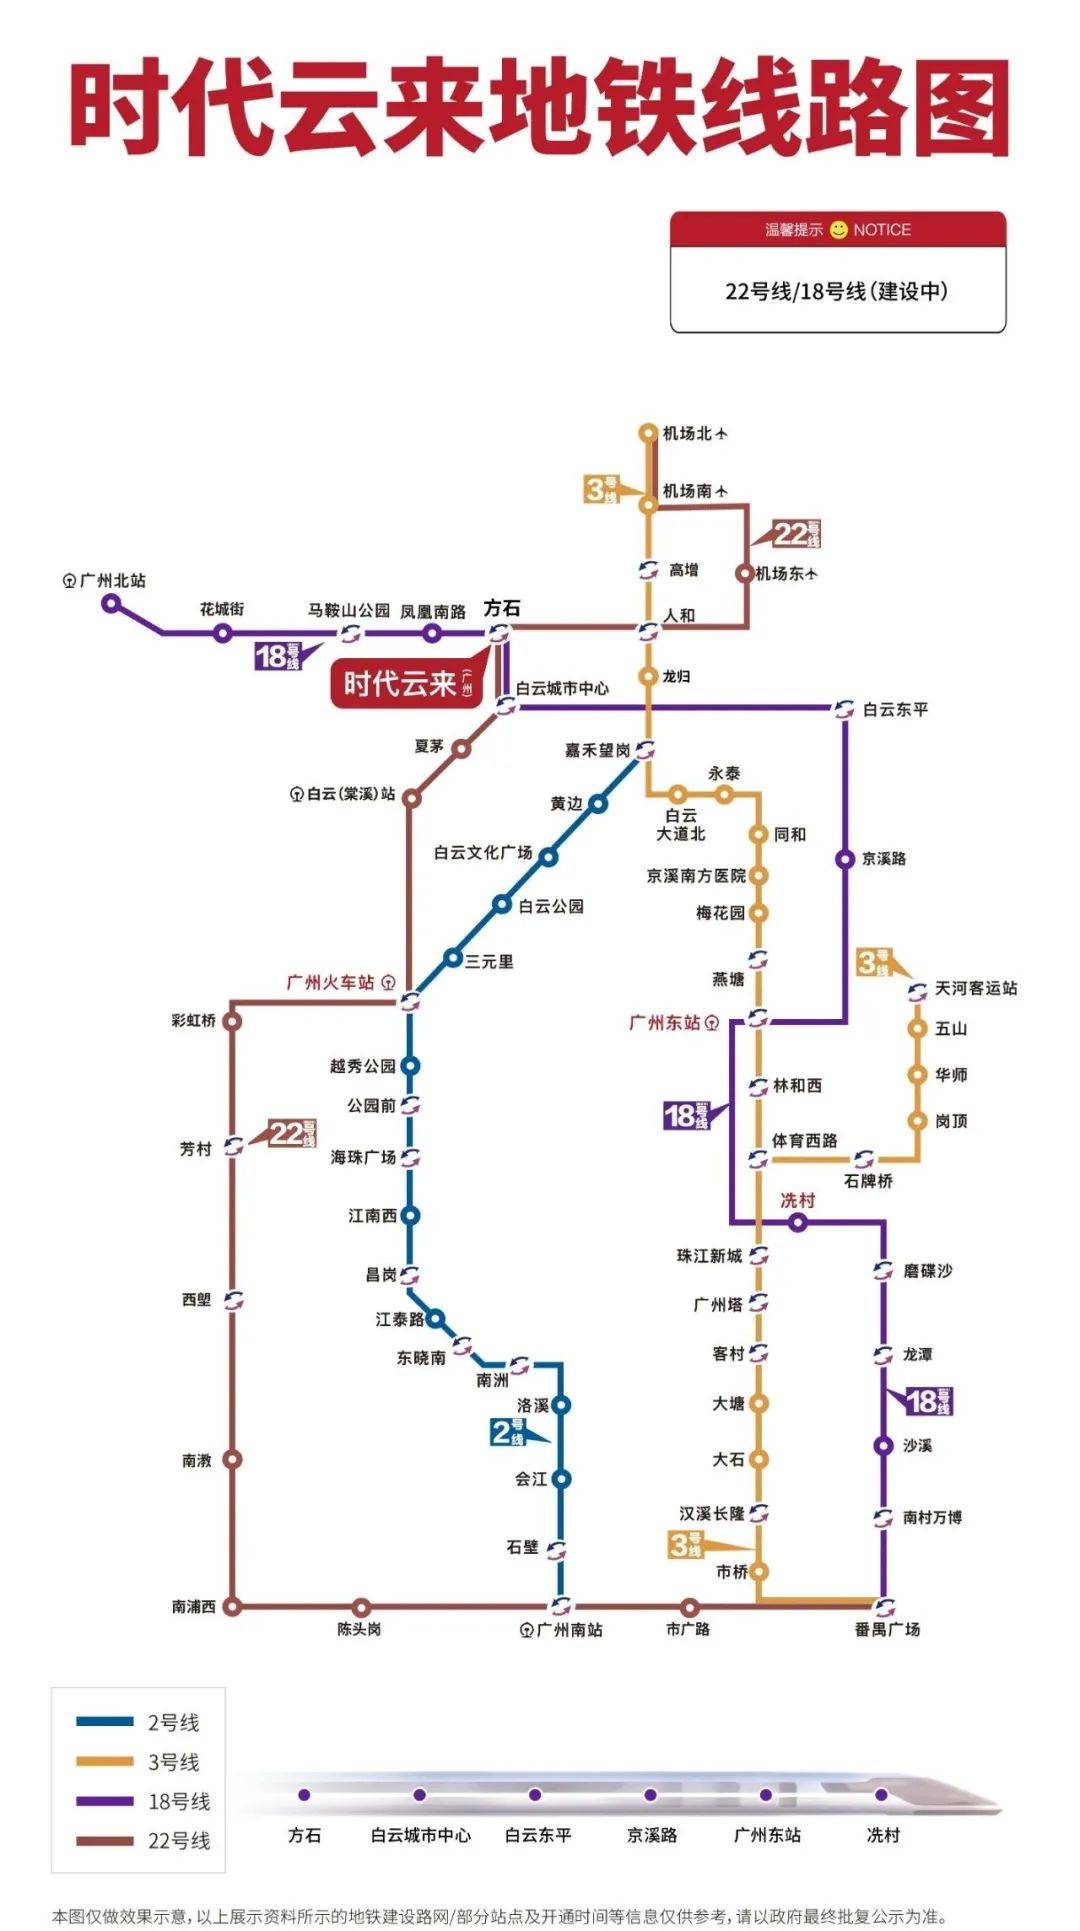 年轻人,广州老八区地铁盘还能选哪里?